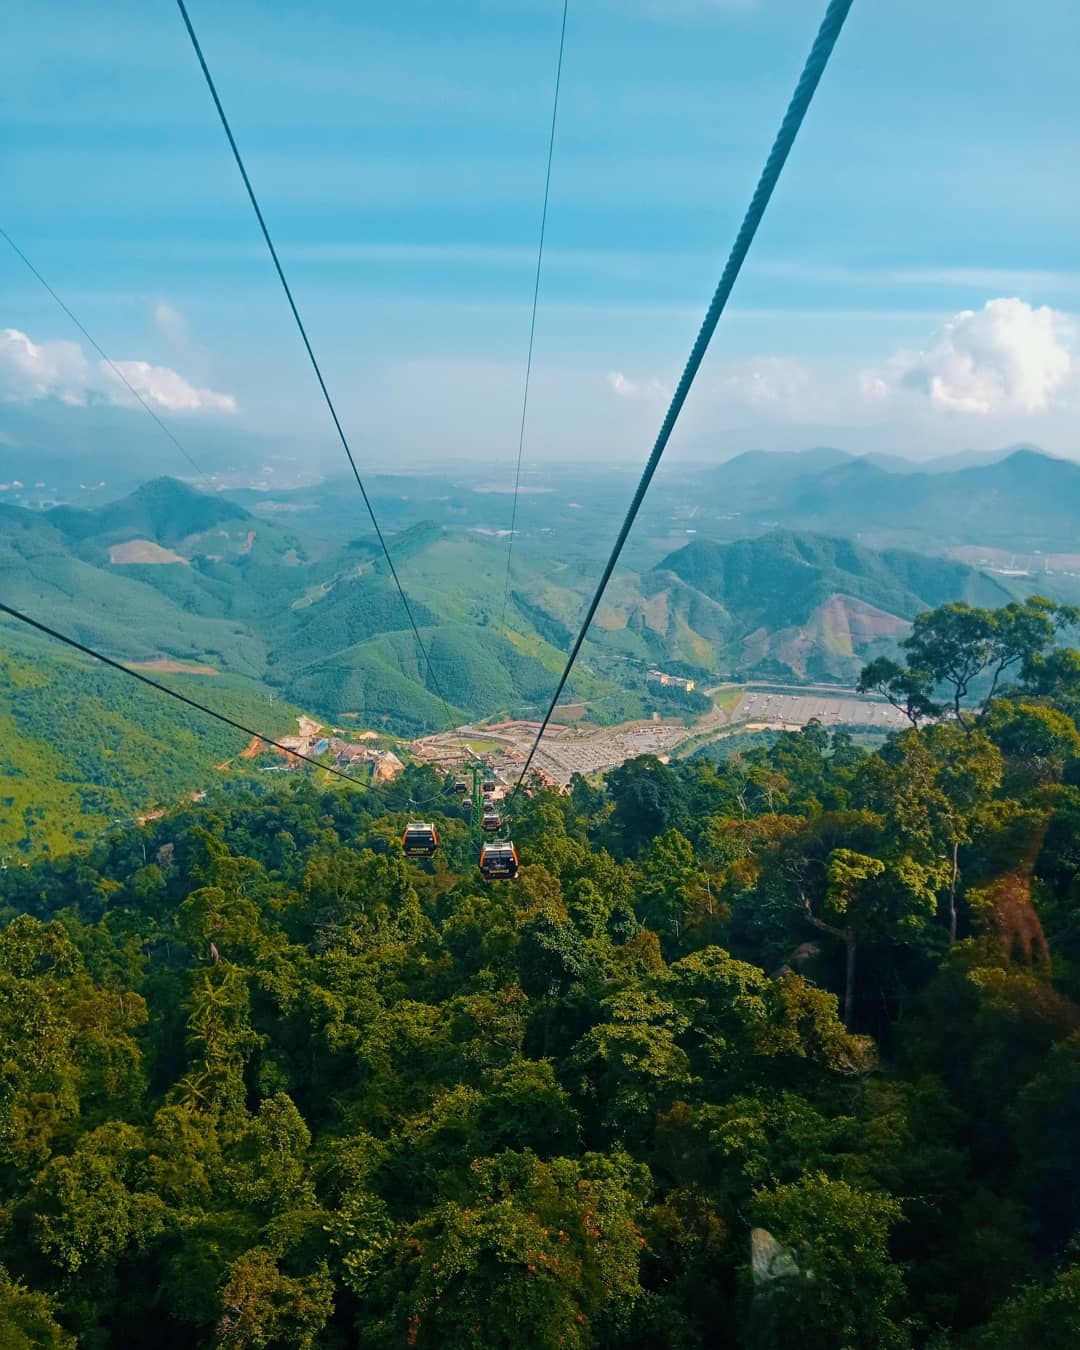 Enjoy panoramic views at Bana Hill cable car